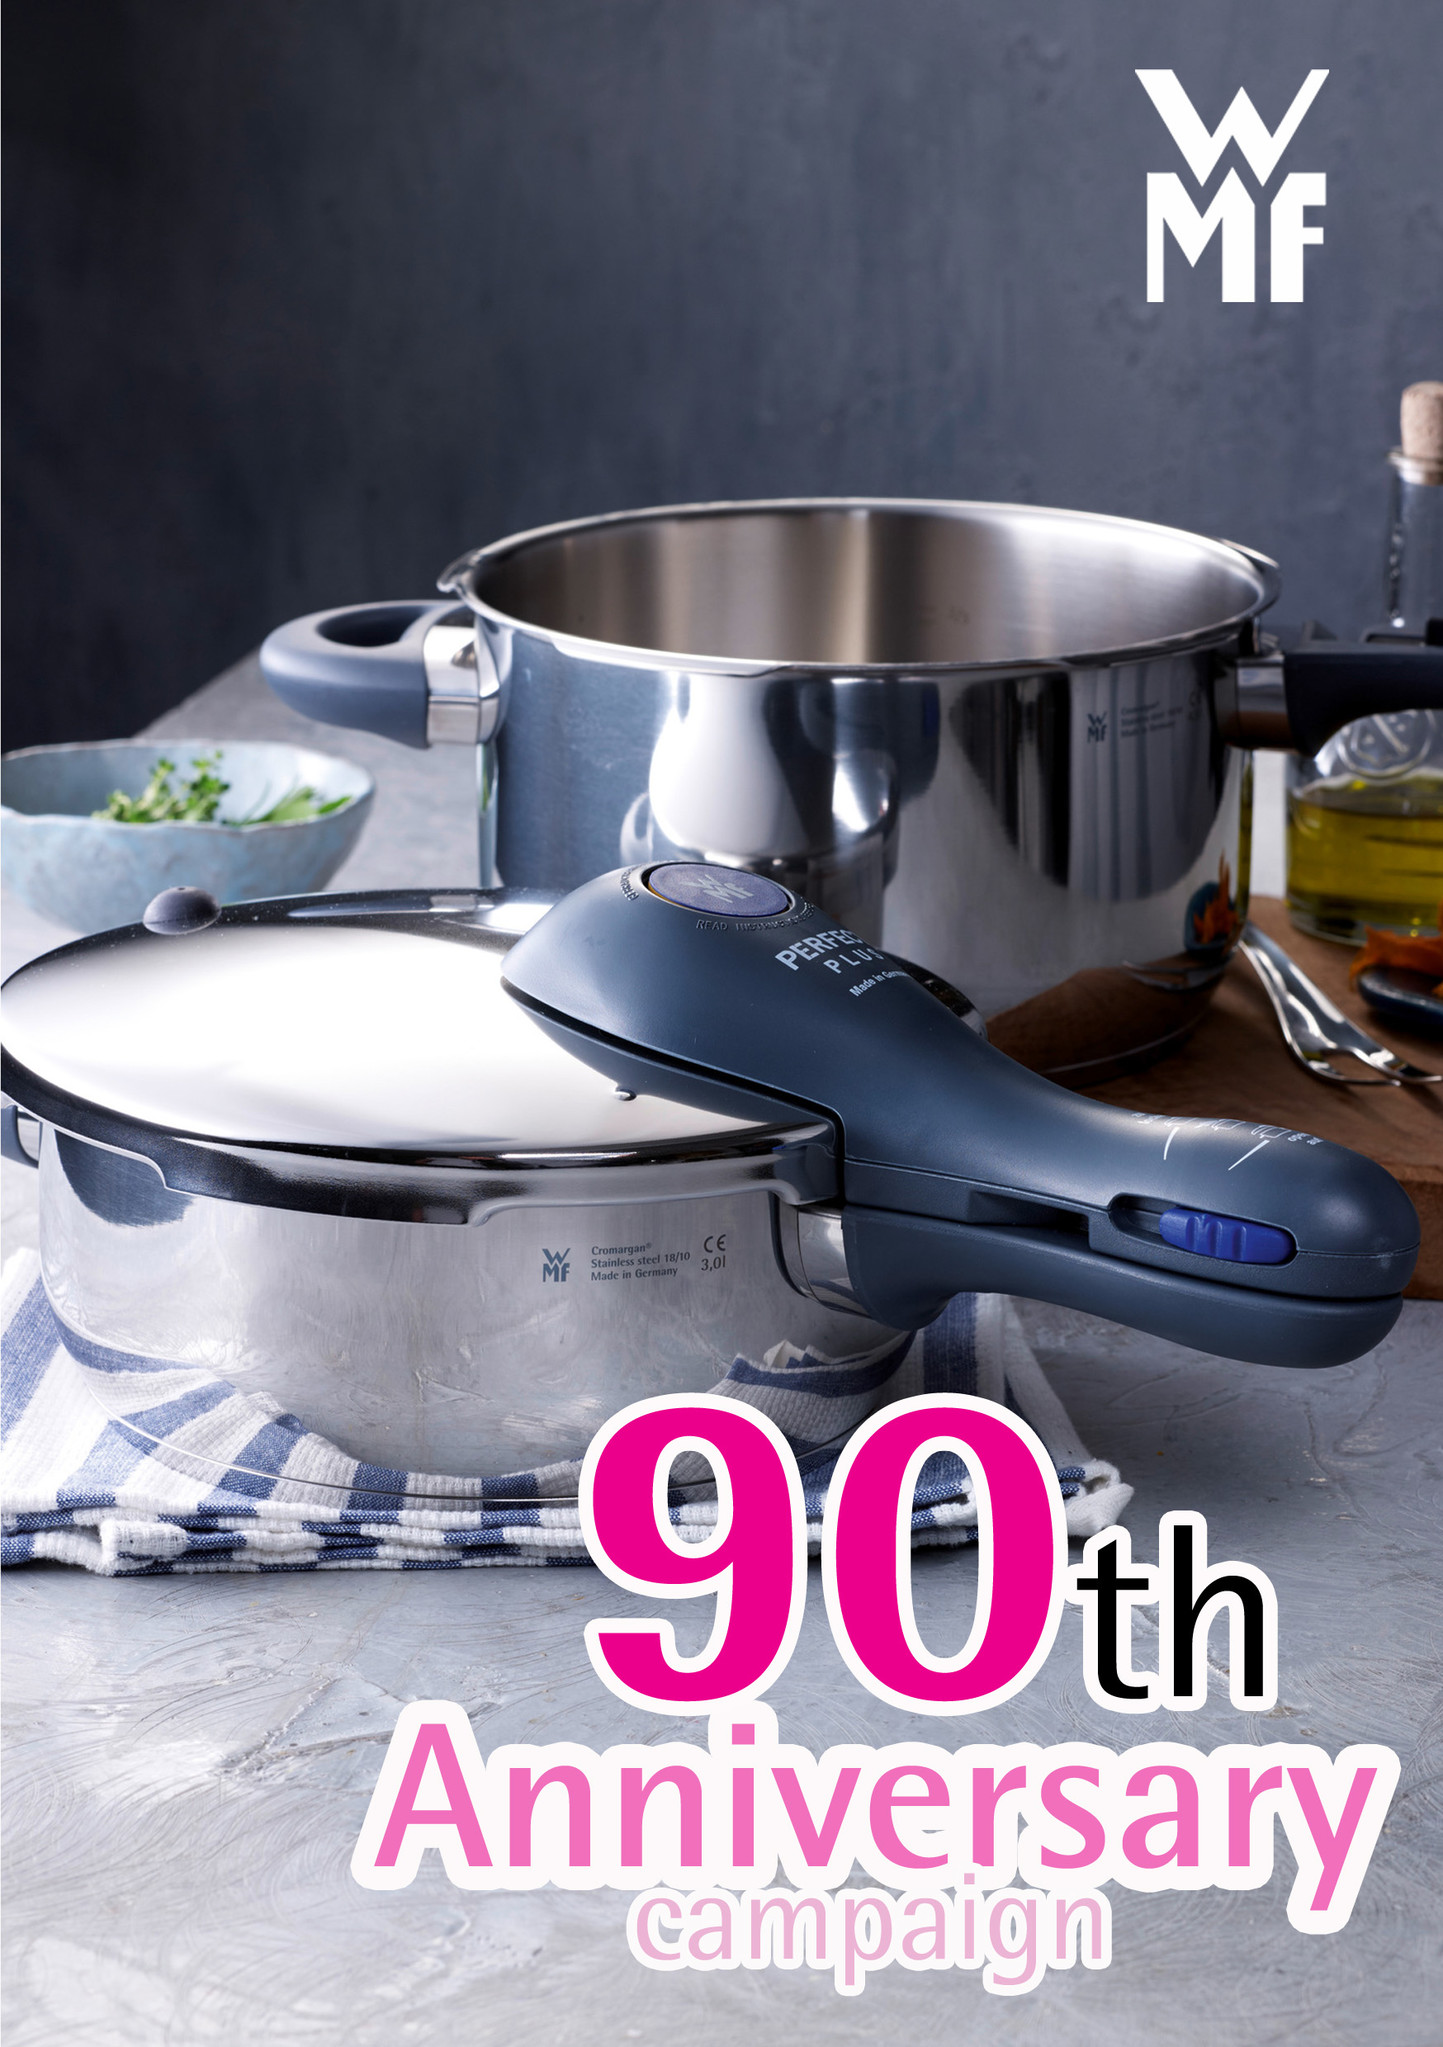 ドイツ老舗キッチンウェア Wmf の圧力鍋をお得に手に入れるチャンス Wmf圧力鍋90周年記念キャンペーン 開催のお知らせ